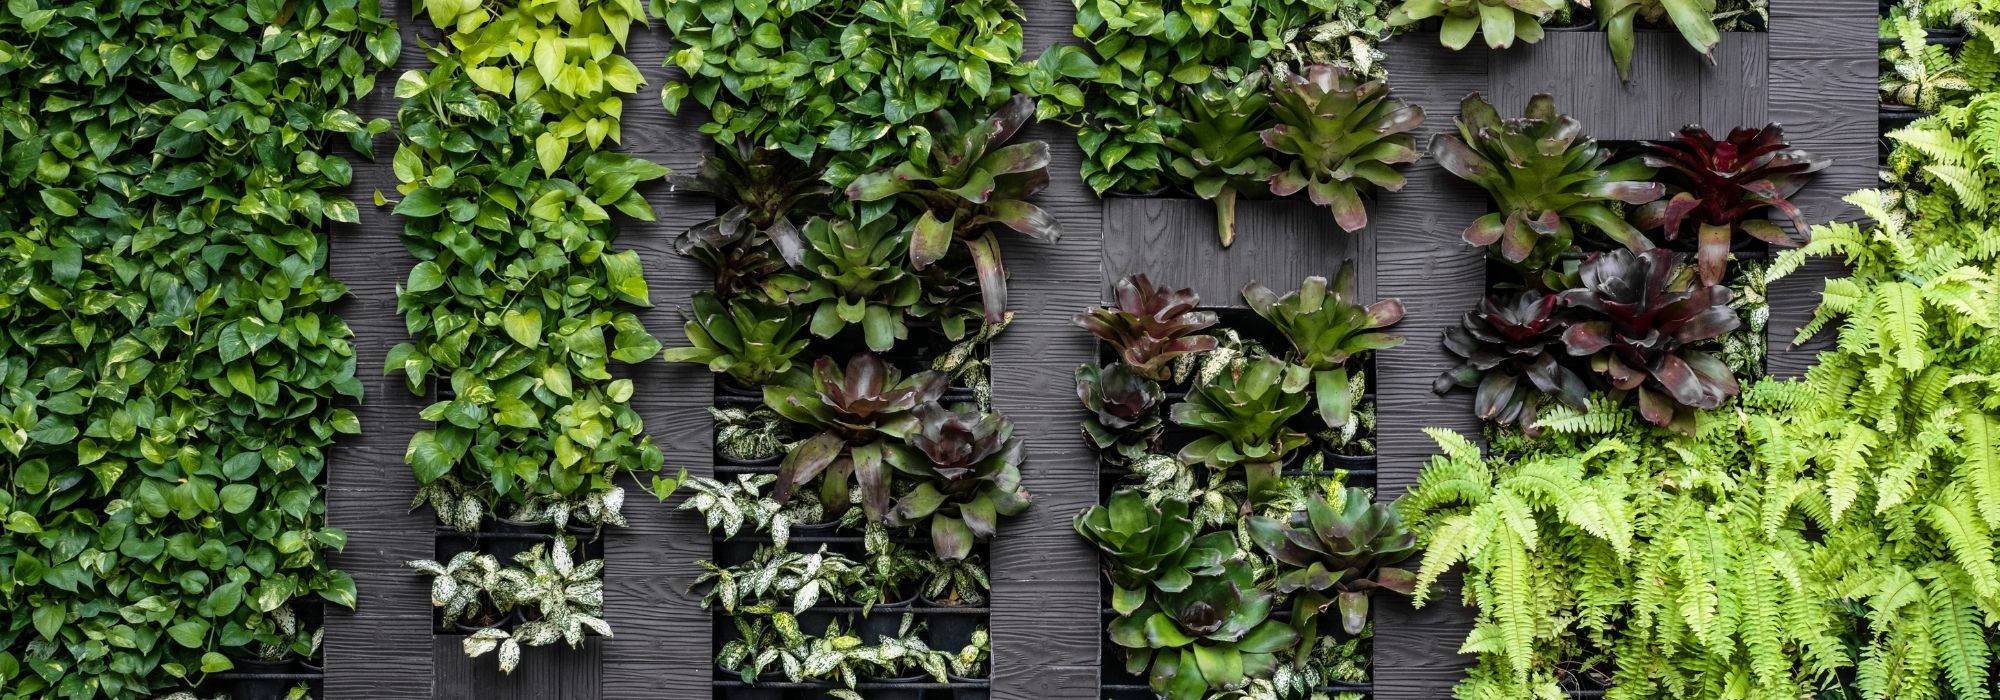 Murs végétaux artificiels extérieurs : 7 raisons de choisir une solution  durable et sans contraintes